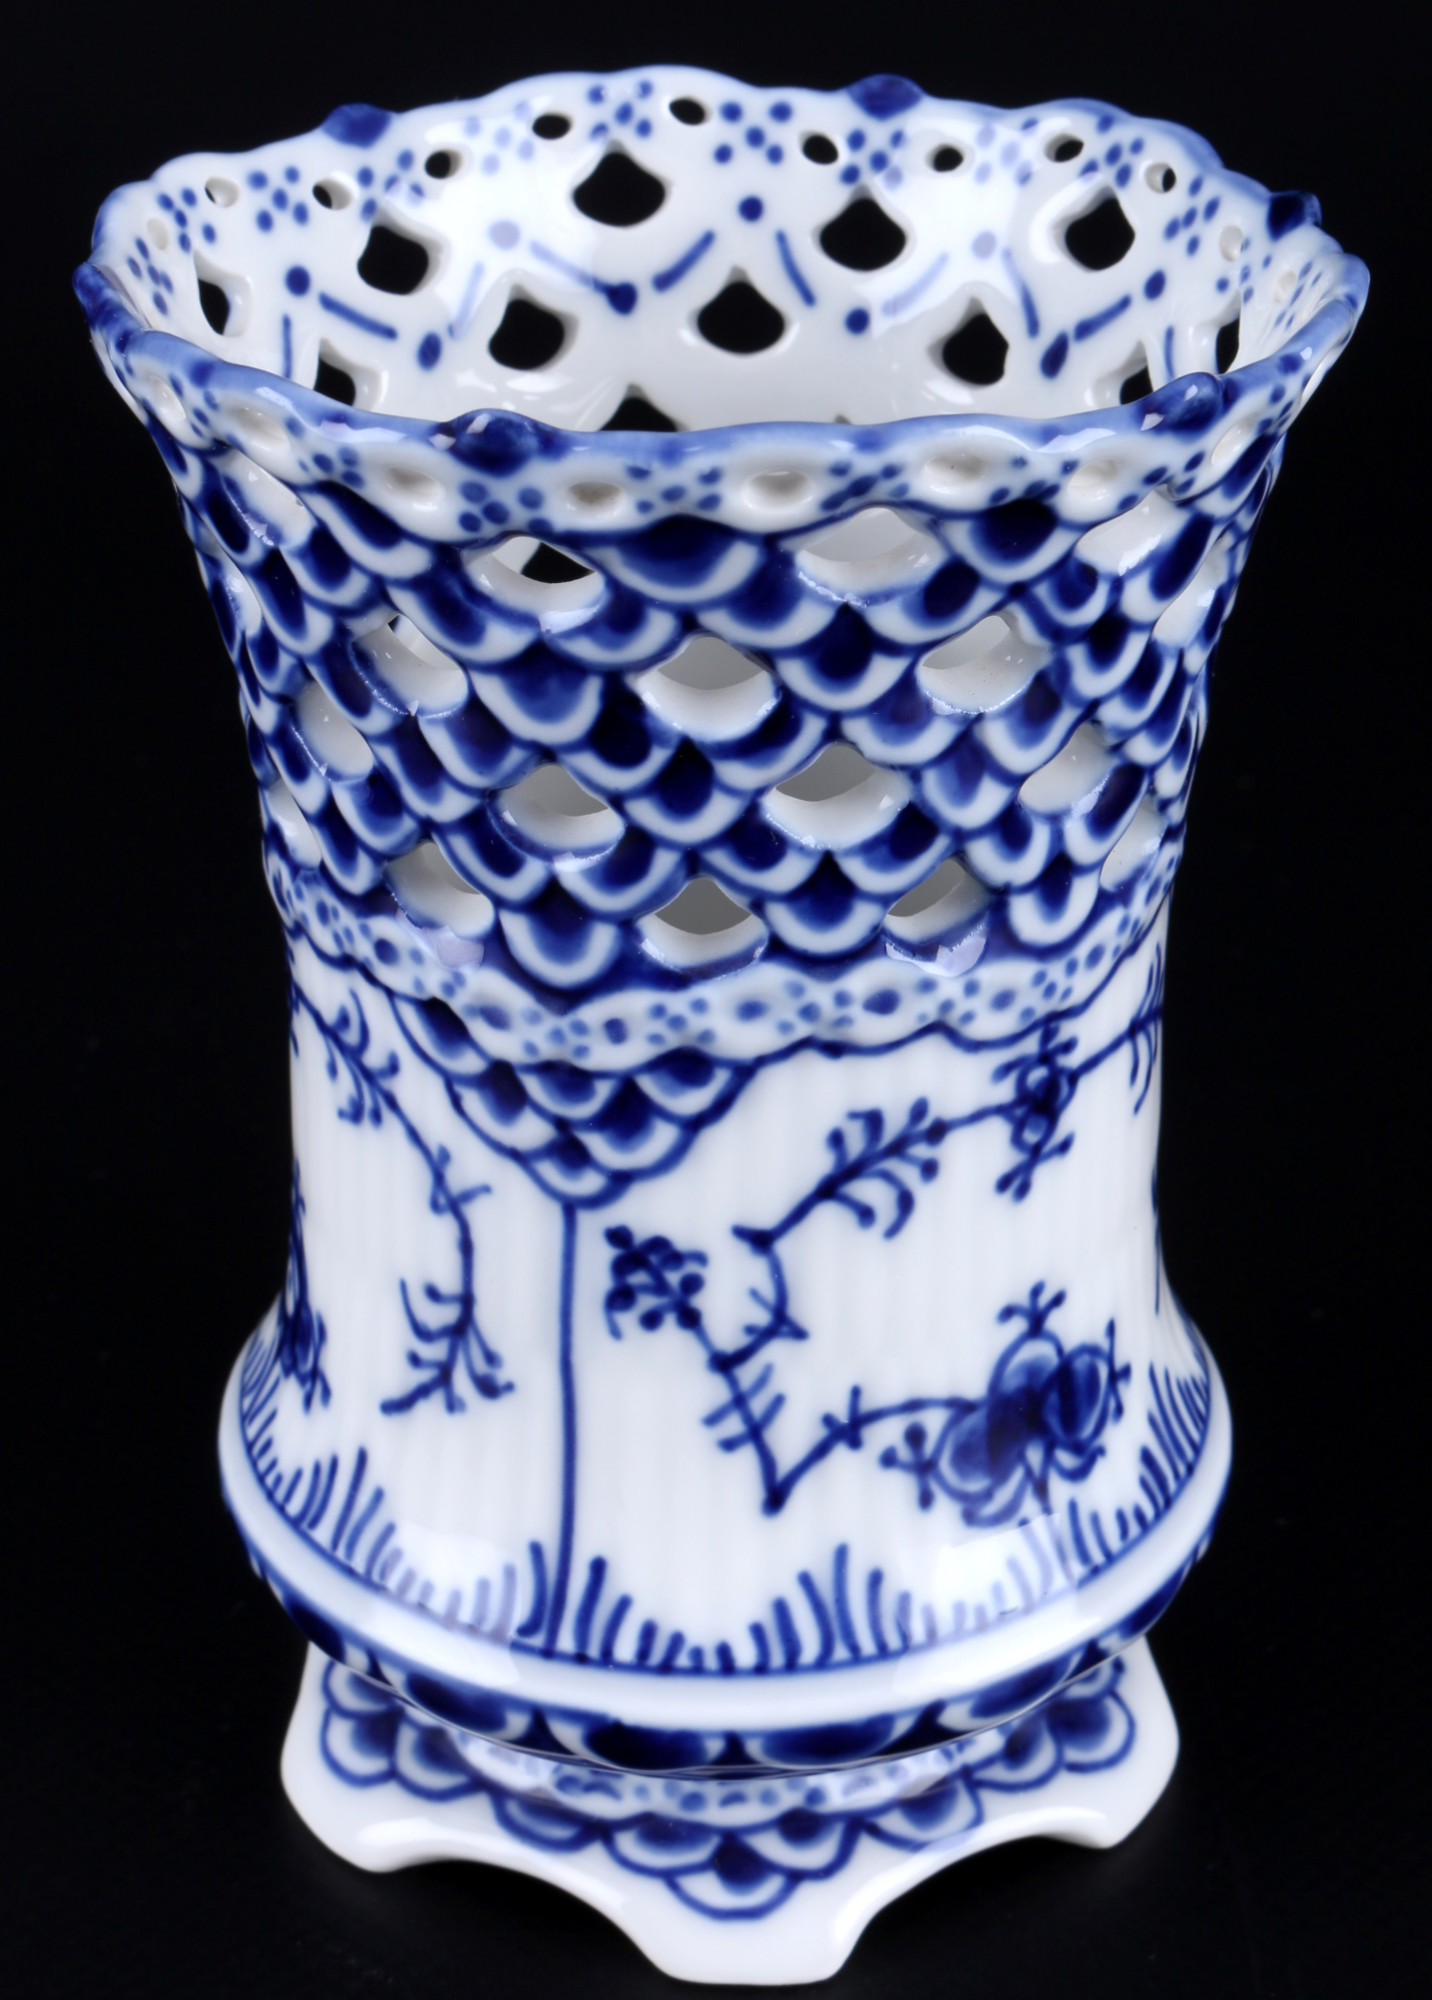 Royal Copenhagen Musselmalet Full Lace 3 Vases 1015/1016 1st choice, Vollspitze Vasen, - Image 2 of 5